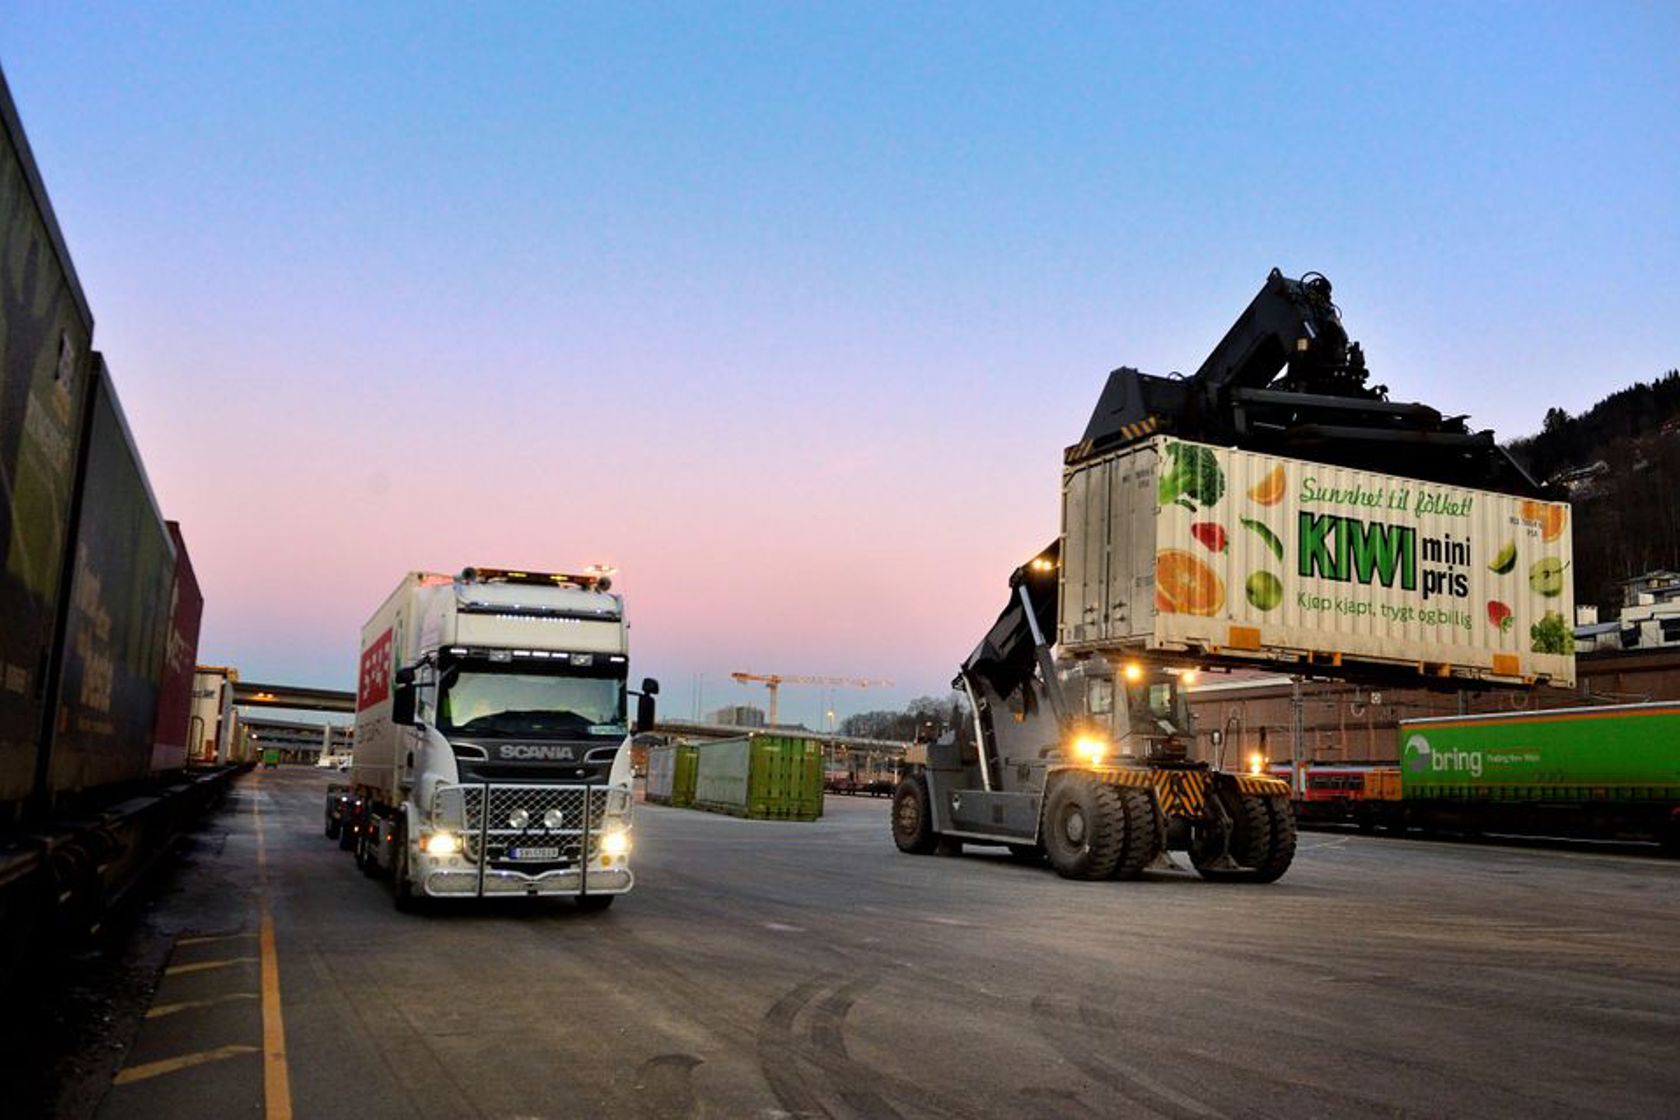 Bildet er tatt på en godsterminal hvor en stor truck laster av en trailer og på et godstog. 